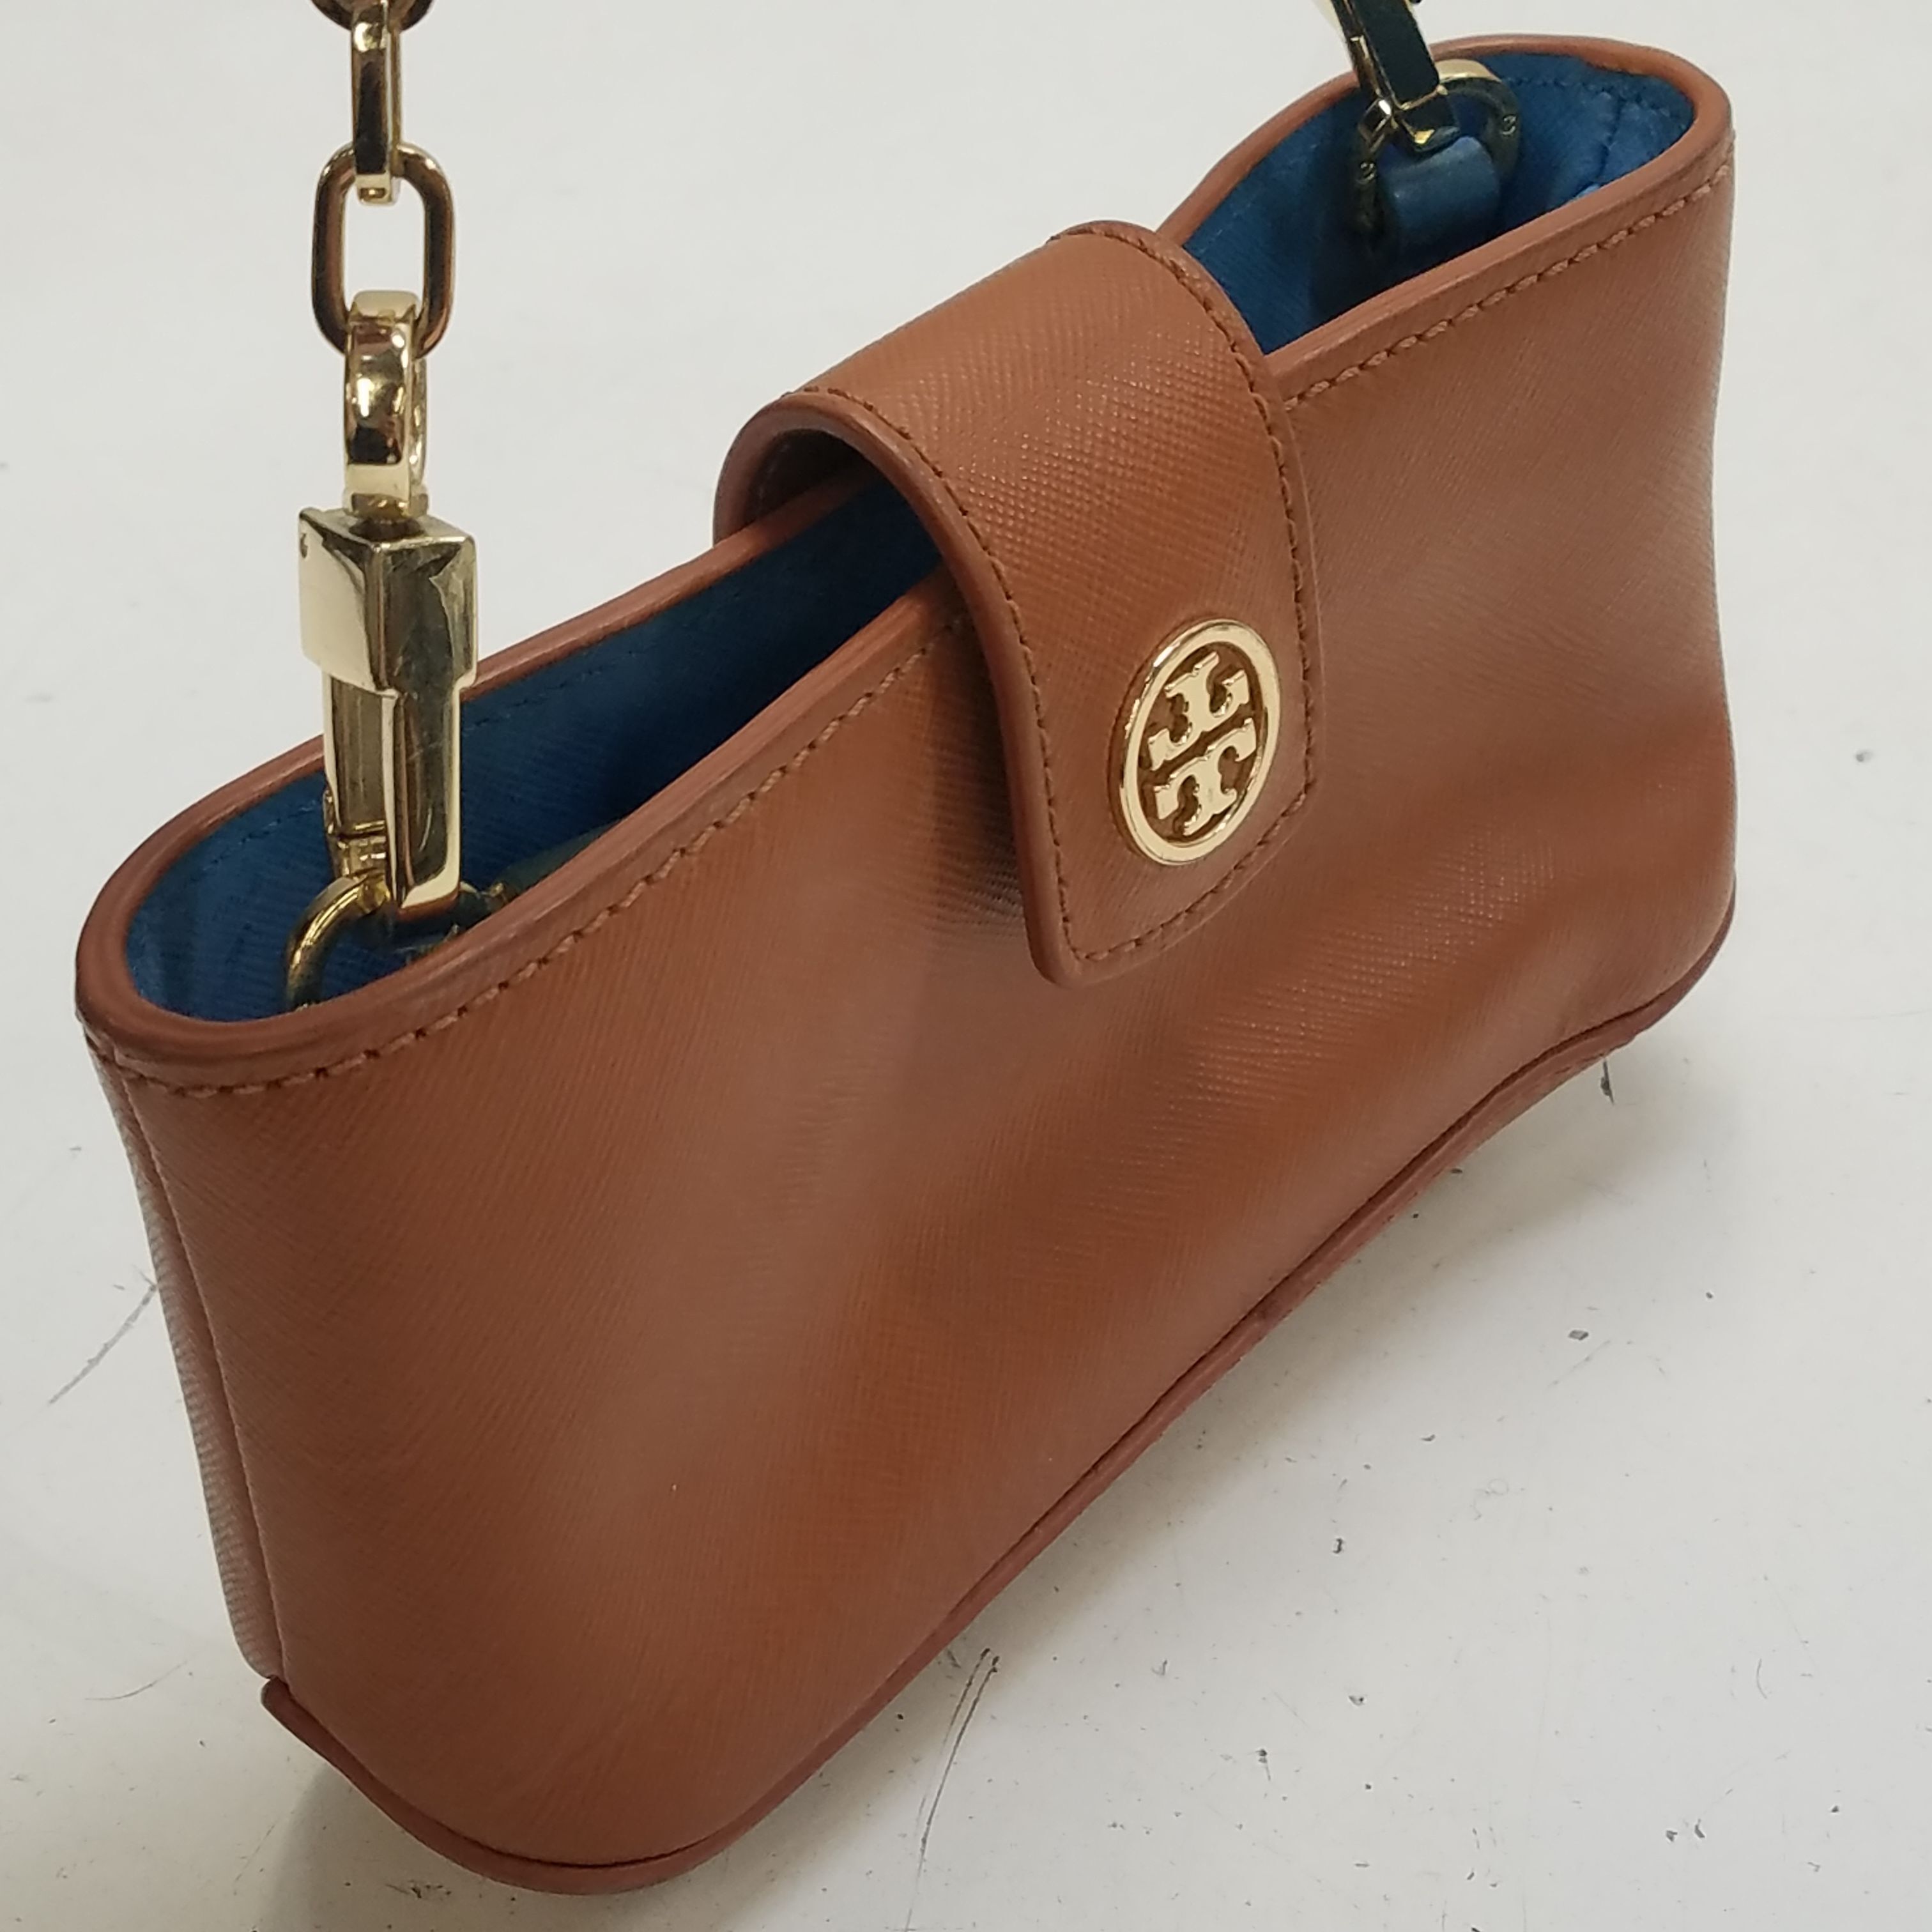 Designer Mini Bags: Mini Cross Body Bags & Handbags | Tory Burch | Leather  bag trends, Bags, Mini bag